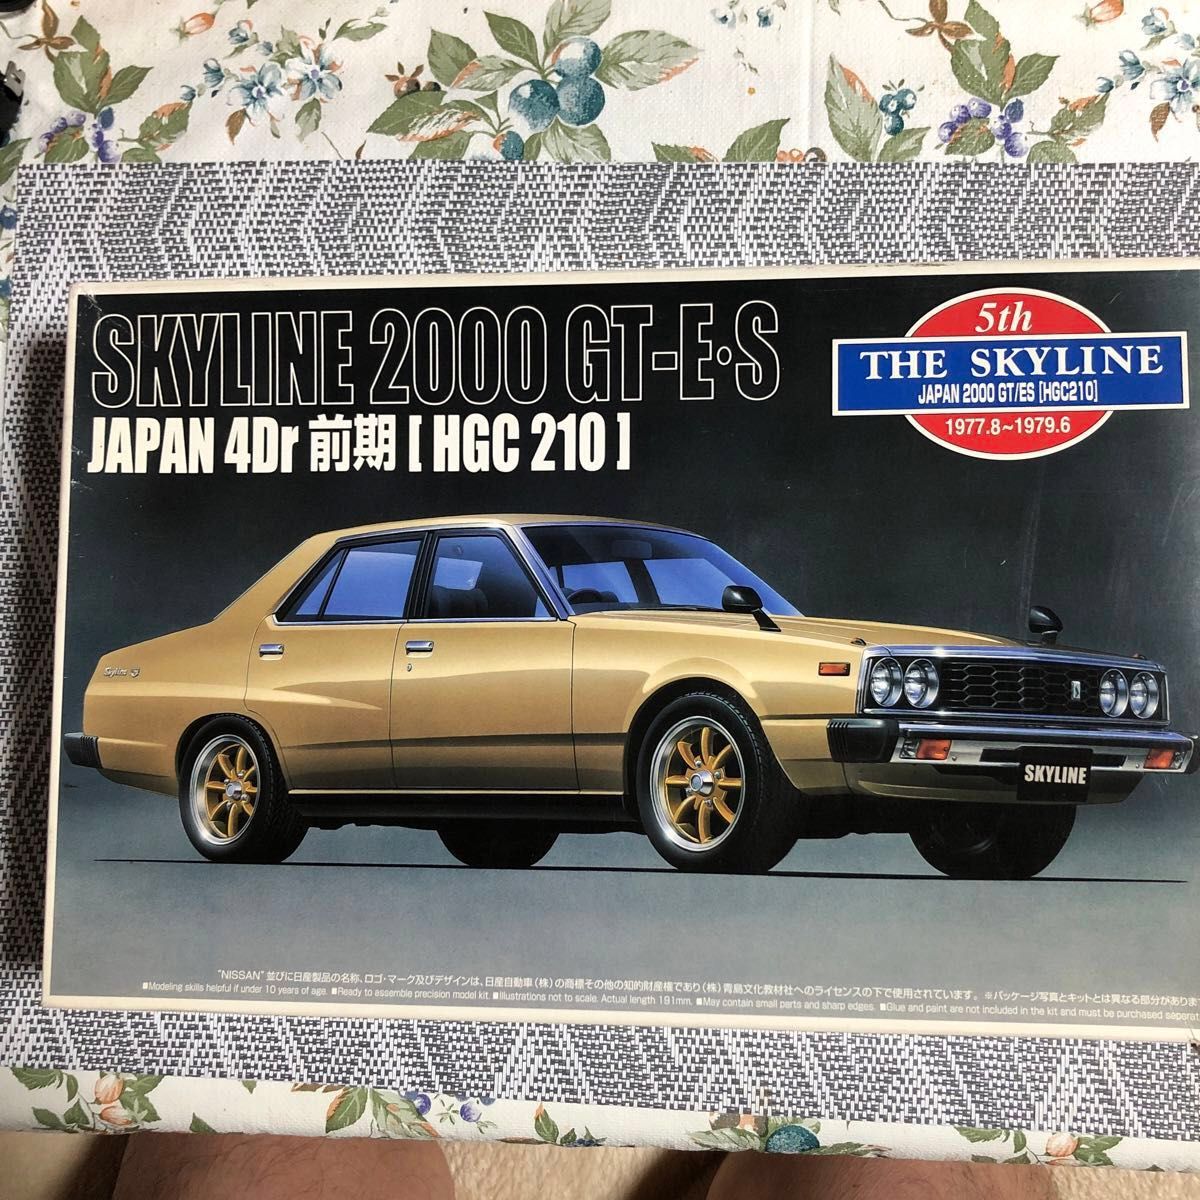 1/24 スカイライン 2000 GT-ES ジャパン 4Dr 前期 丸目四灯 「ザスカイラインシリーズ No.12」